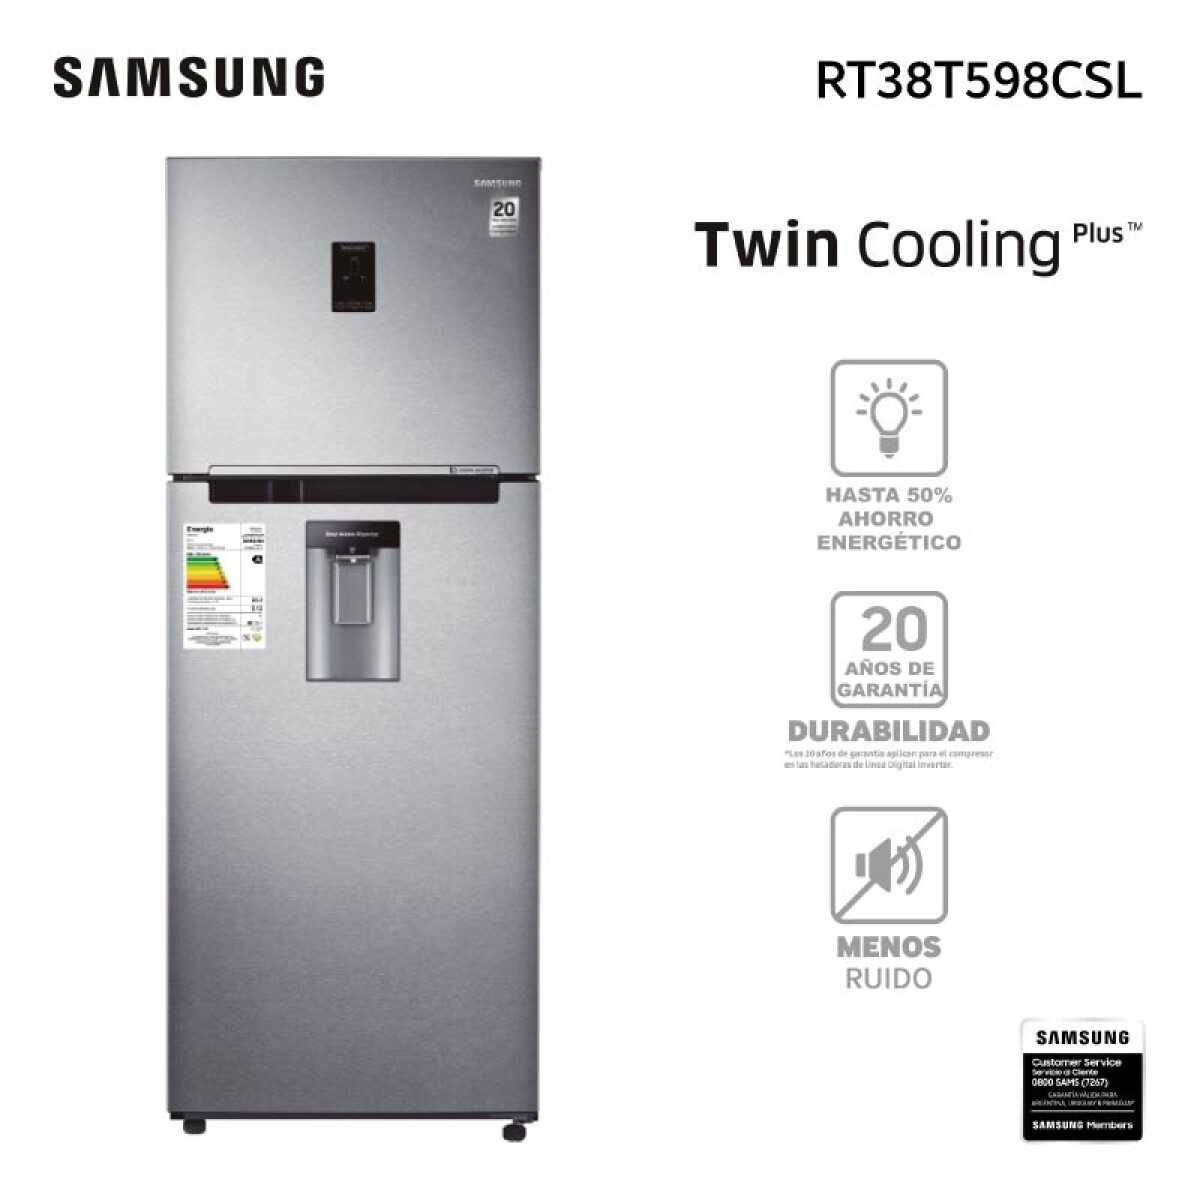 Samsung Refrigerador Rt38t598csl 